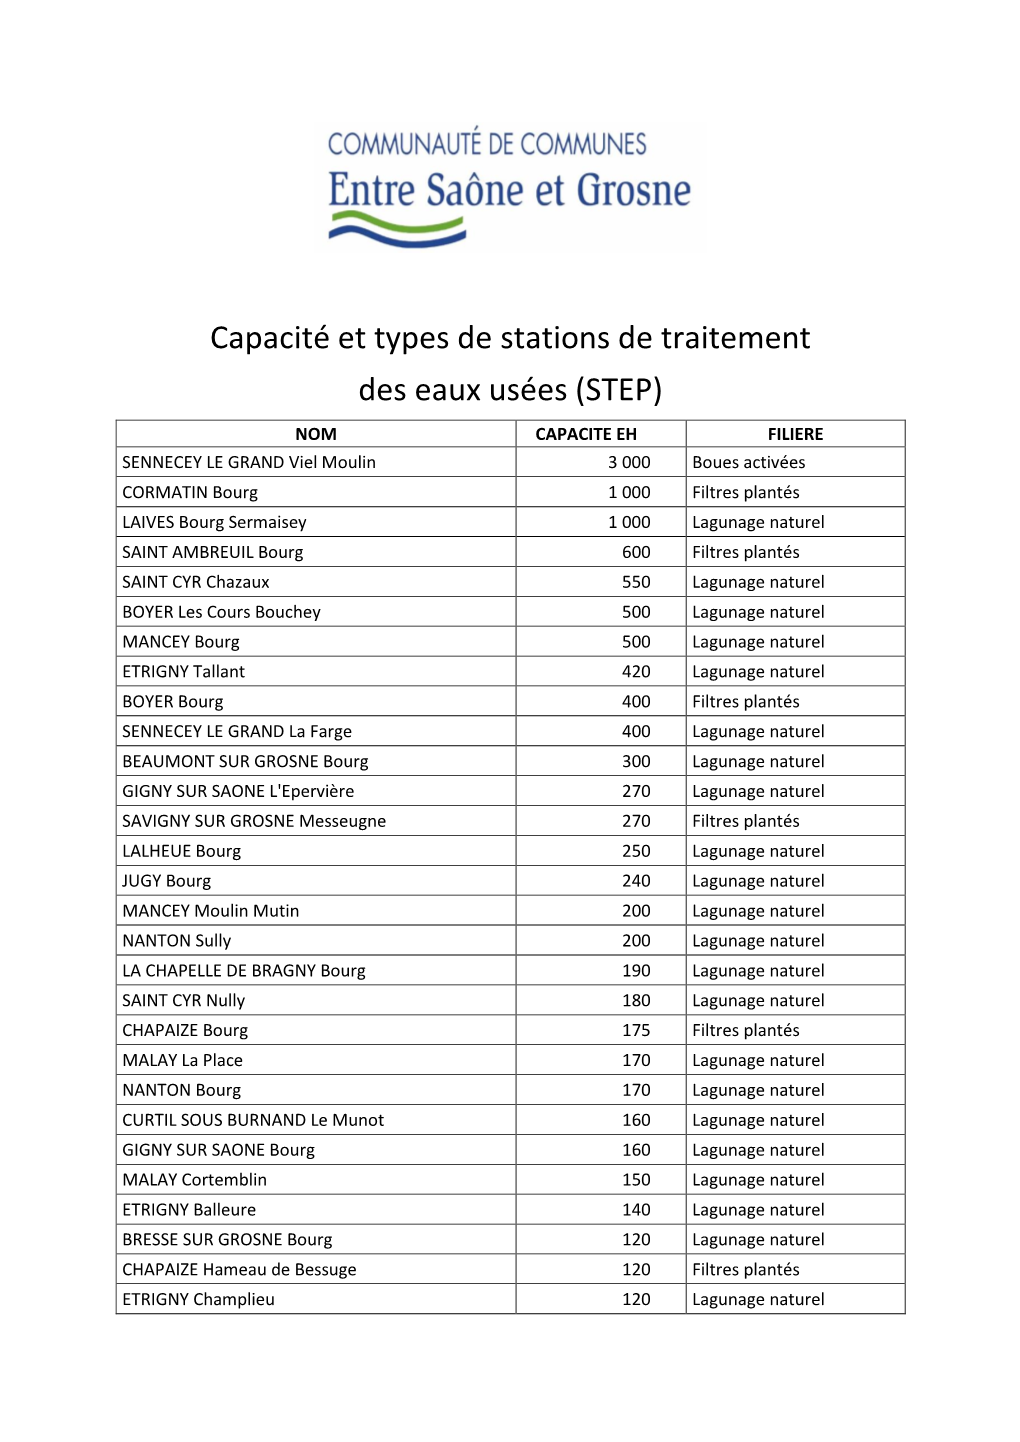 Capacité Et Types De Stations De Traitement Des Eaux Usées (STEP)